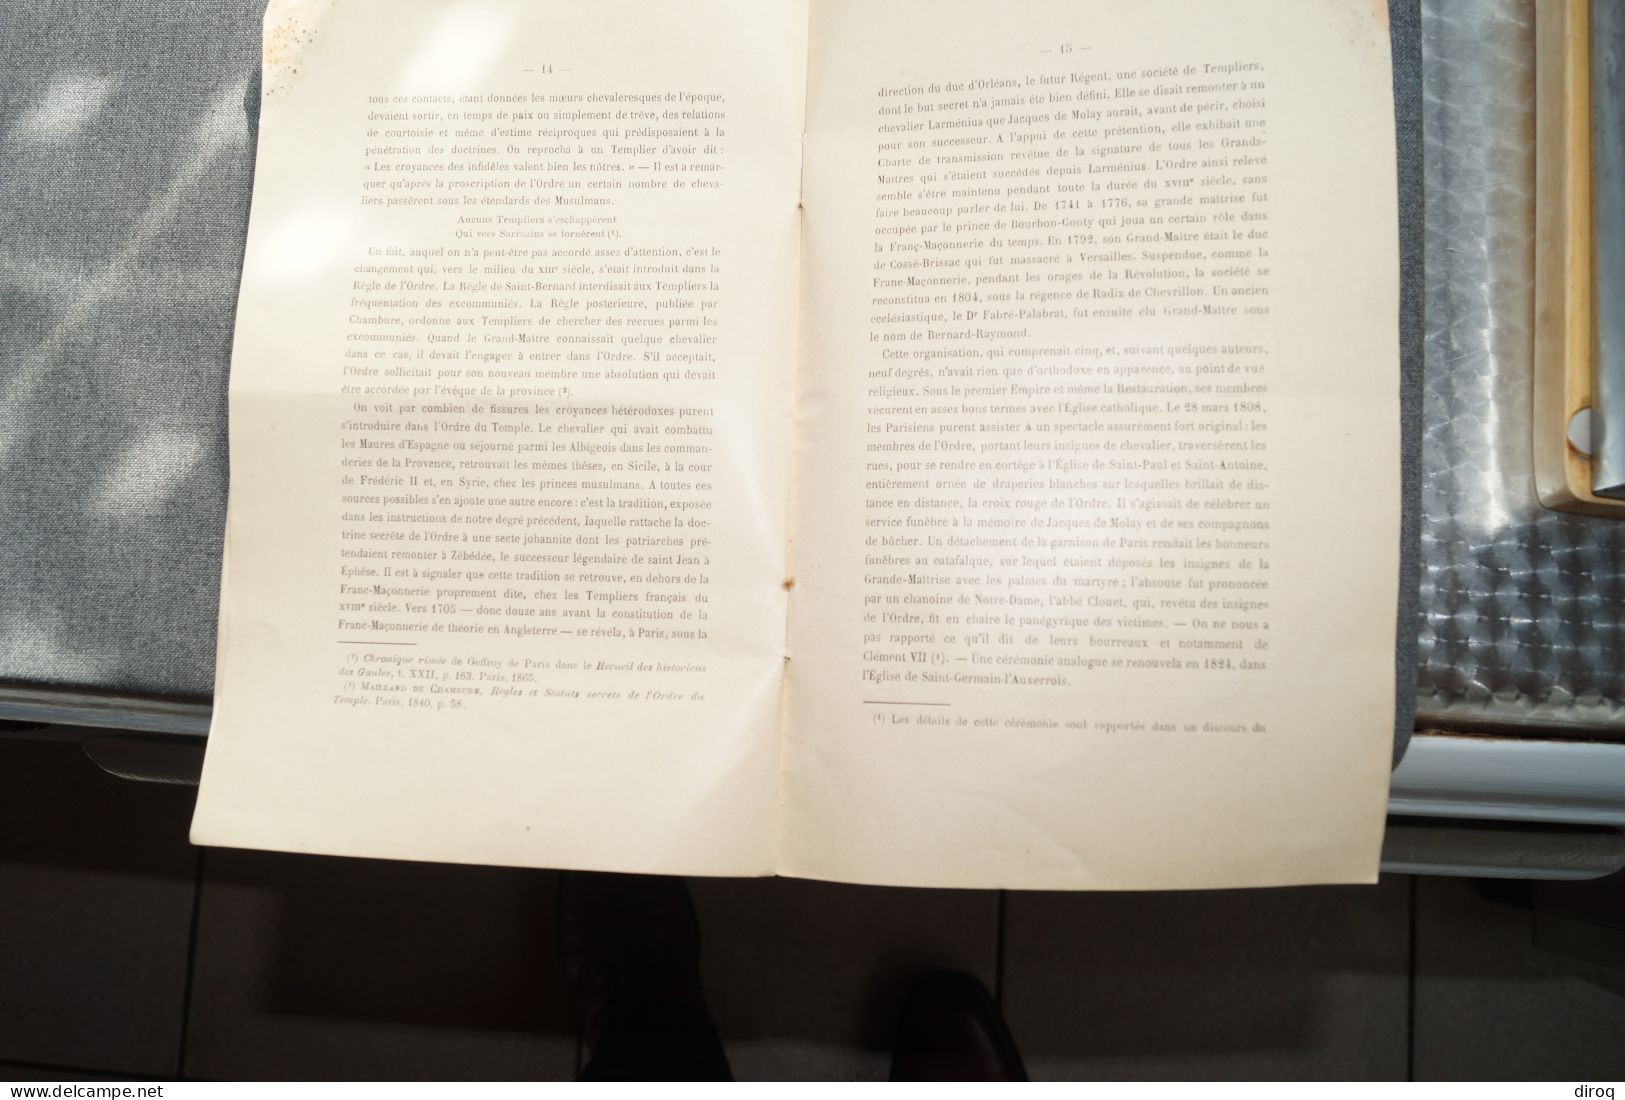 Franc-Maçonnerie,instructions,Chevalier Kadosch,18 pages,22,5 Cm. sur 14,5 Cm.,originale pour collection